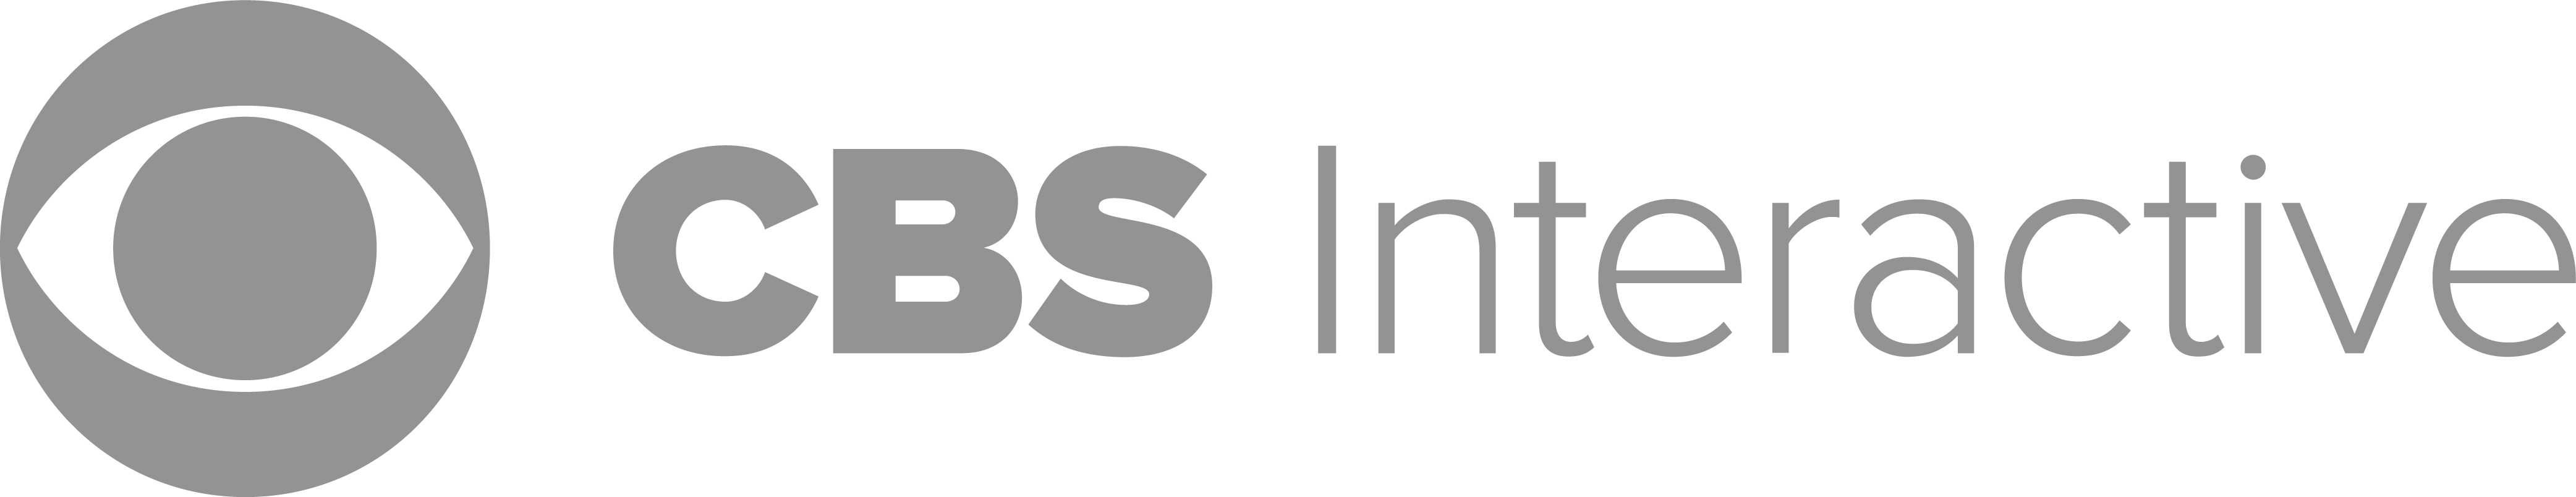 CBS_Interactive_Logo